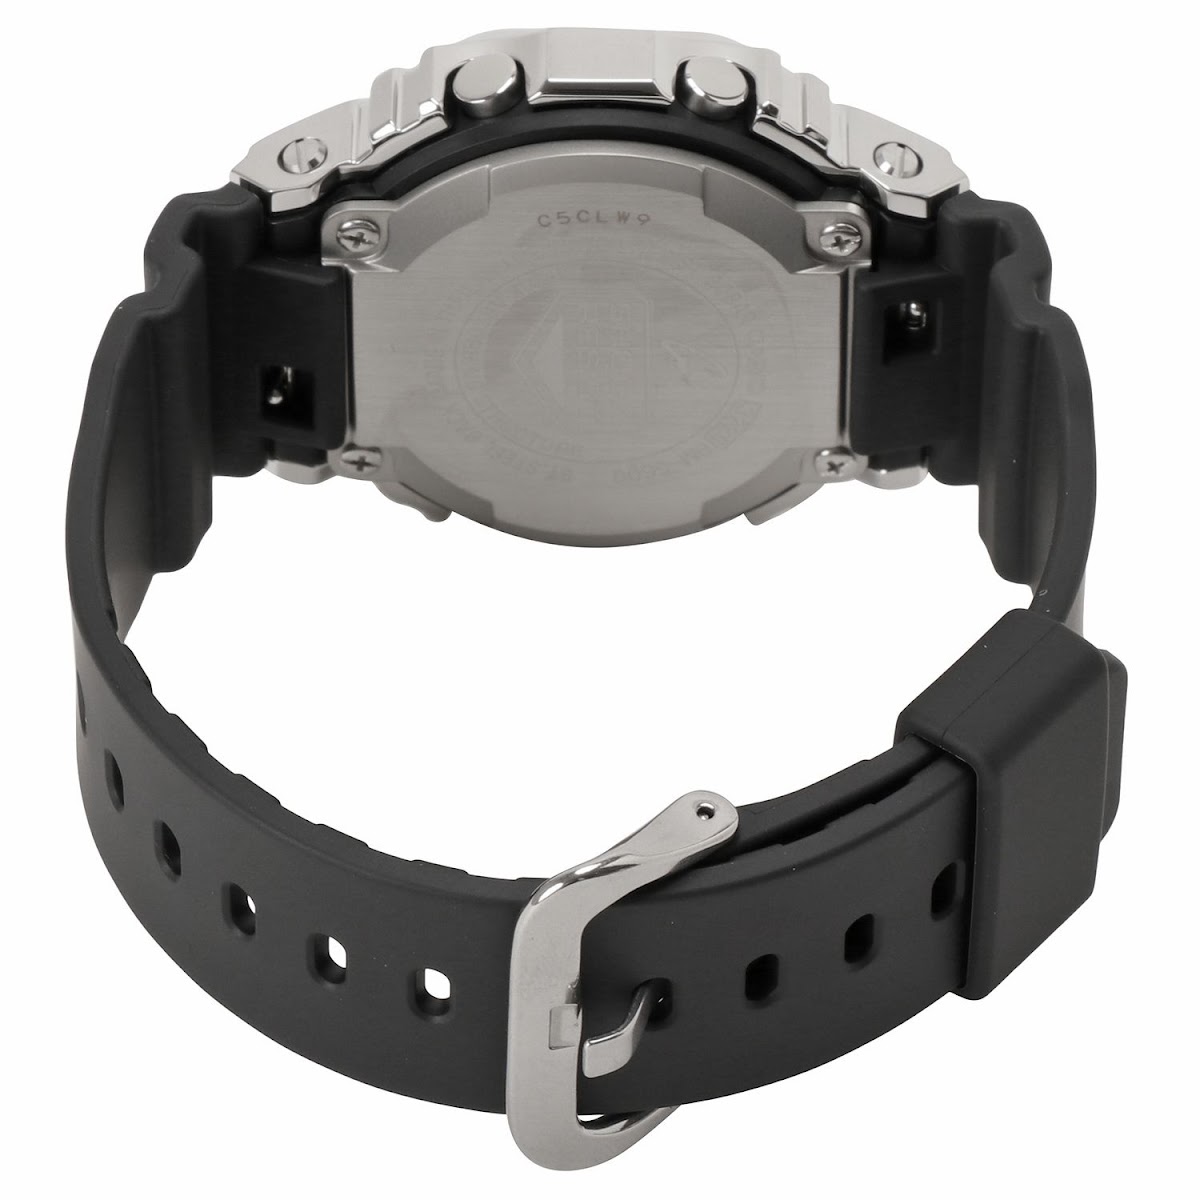 カシオ 腕時計 CASIO 国内品番 逆輸入 GM-5600-1ER メタル 5600